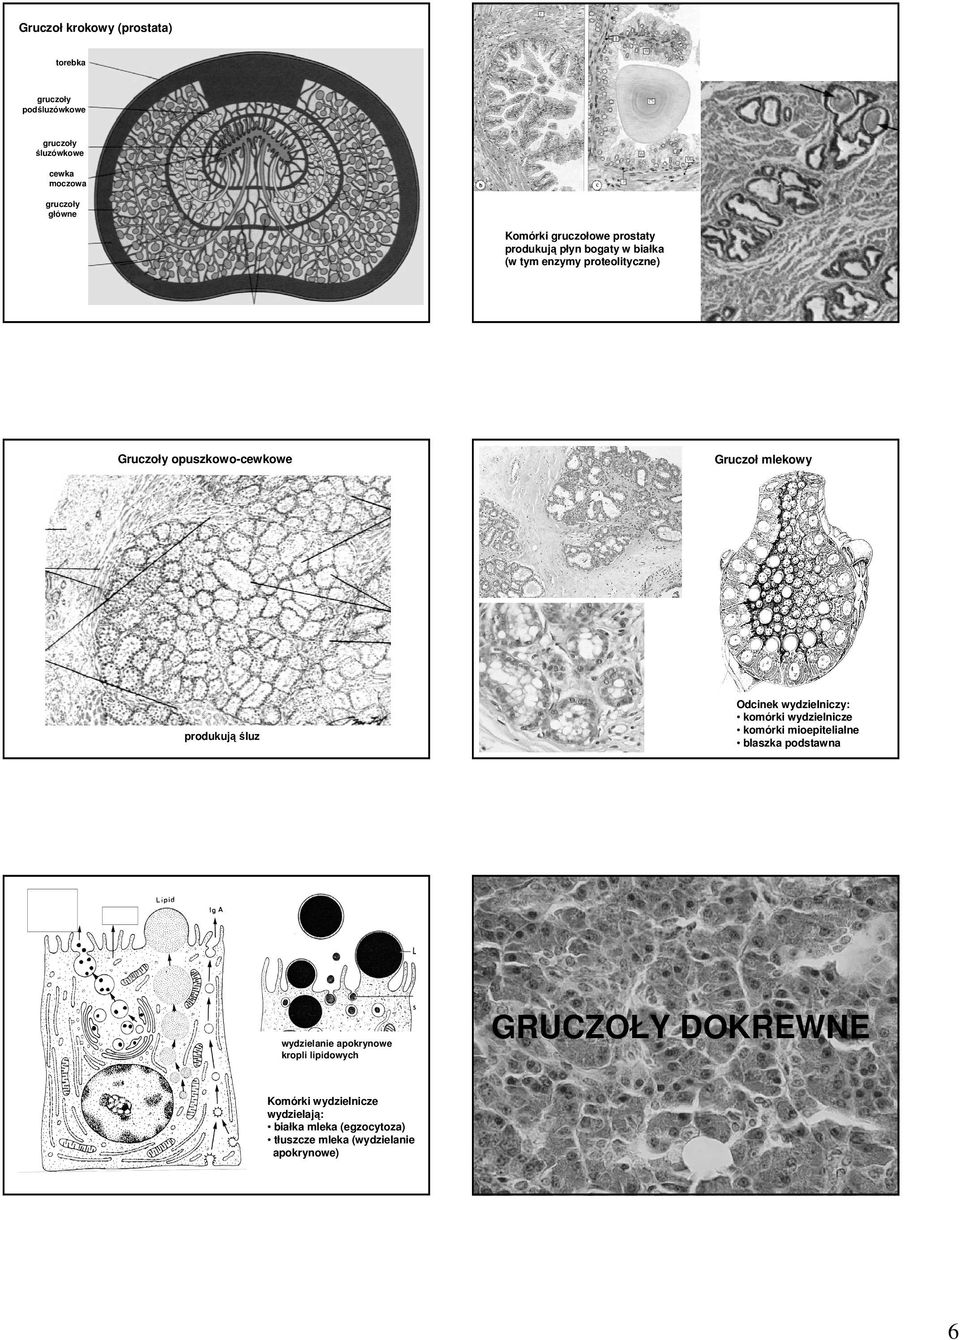 Odcinek wydzielniczy: komórki wydzielnicze komórki mioepitelialne blaszka podstawna produkują śluz wydzielanie apokrynowe